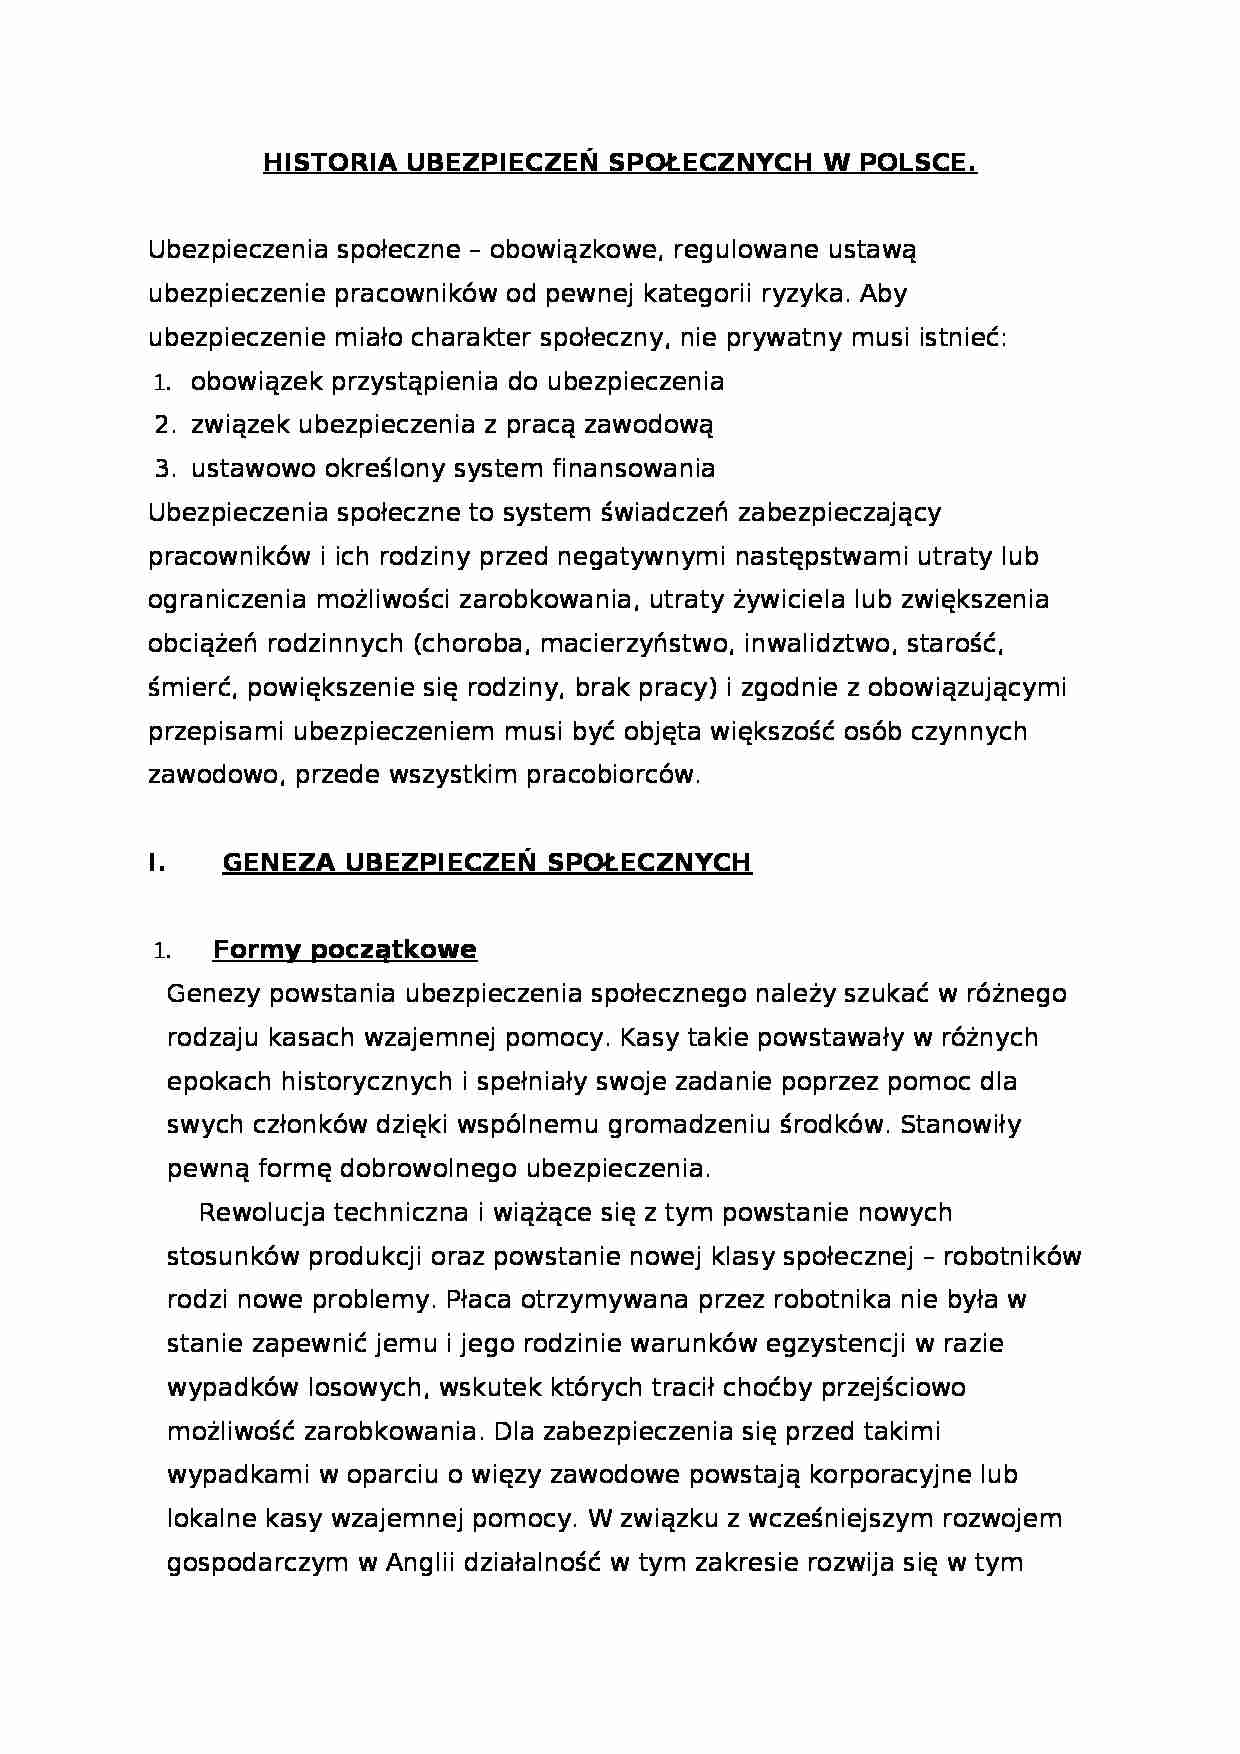 Historia ubezpieczeń społecznych w Polsce - System zaopatrzenia społecznego - strona 1